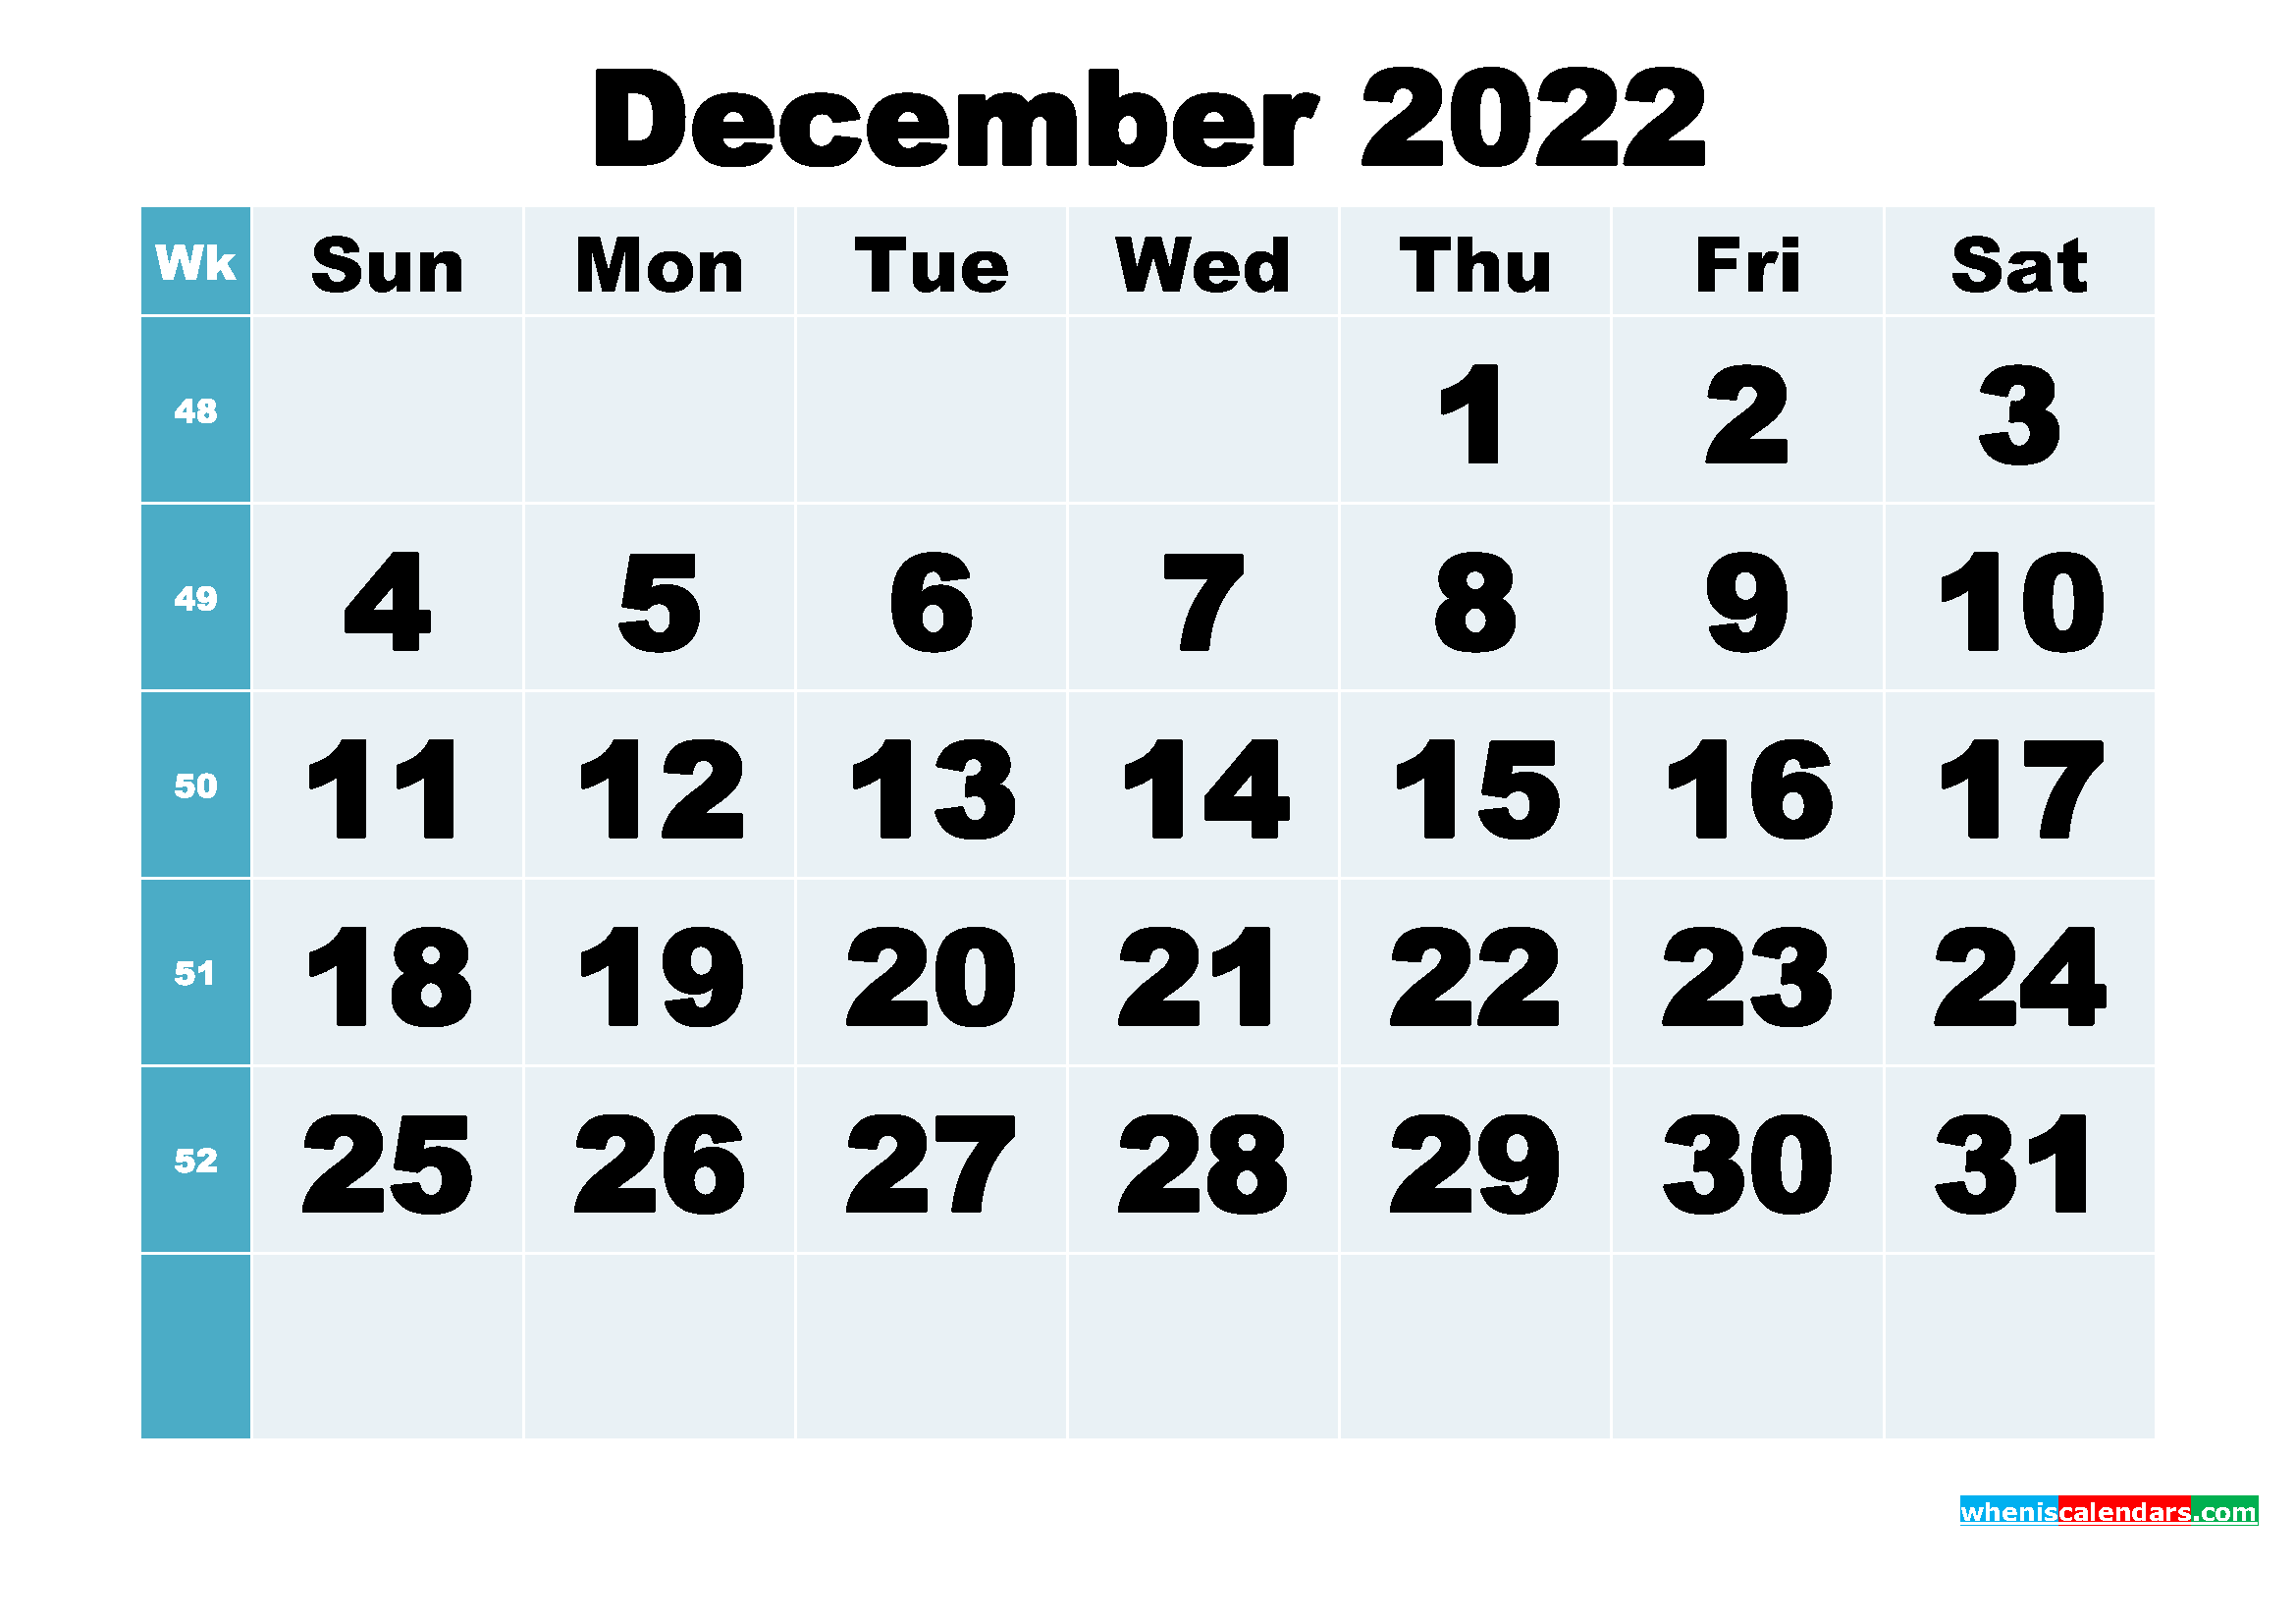 Best Free Desktop Calendar For Windows 10 2022 December 2022 Calendar